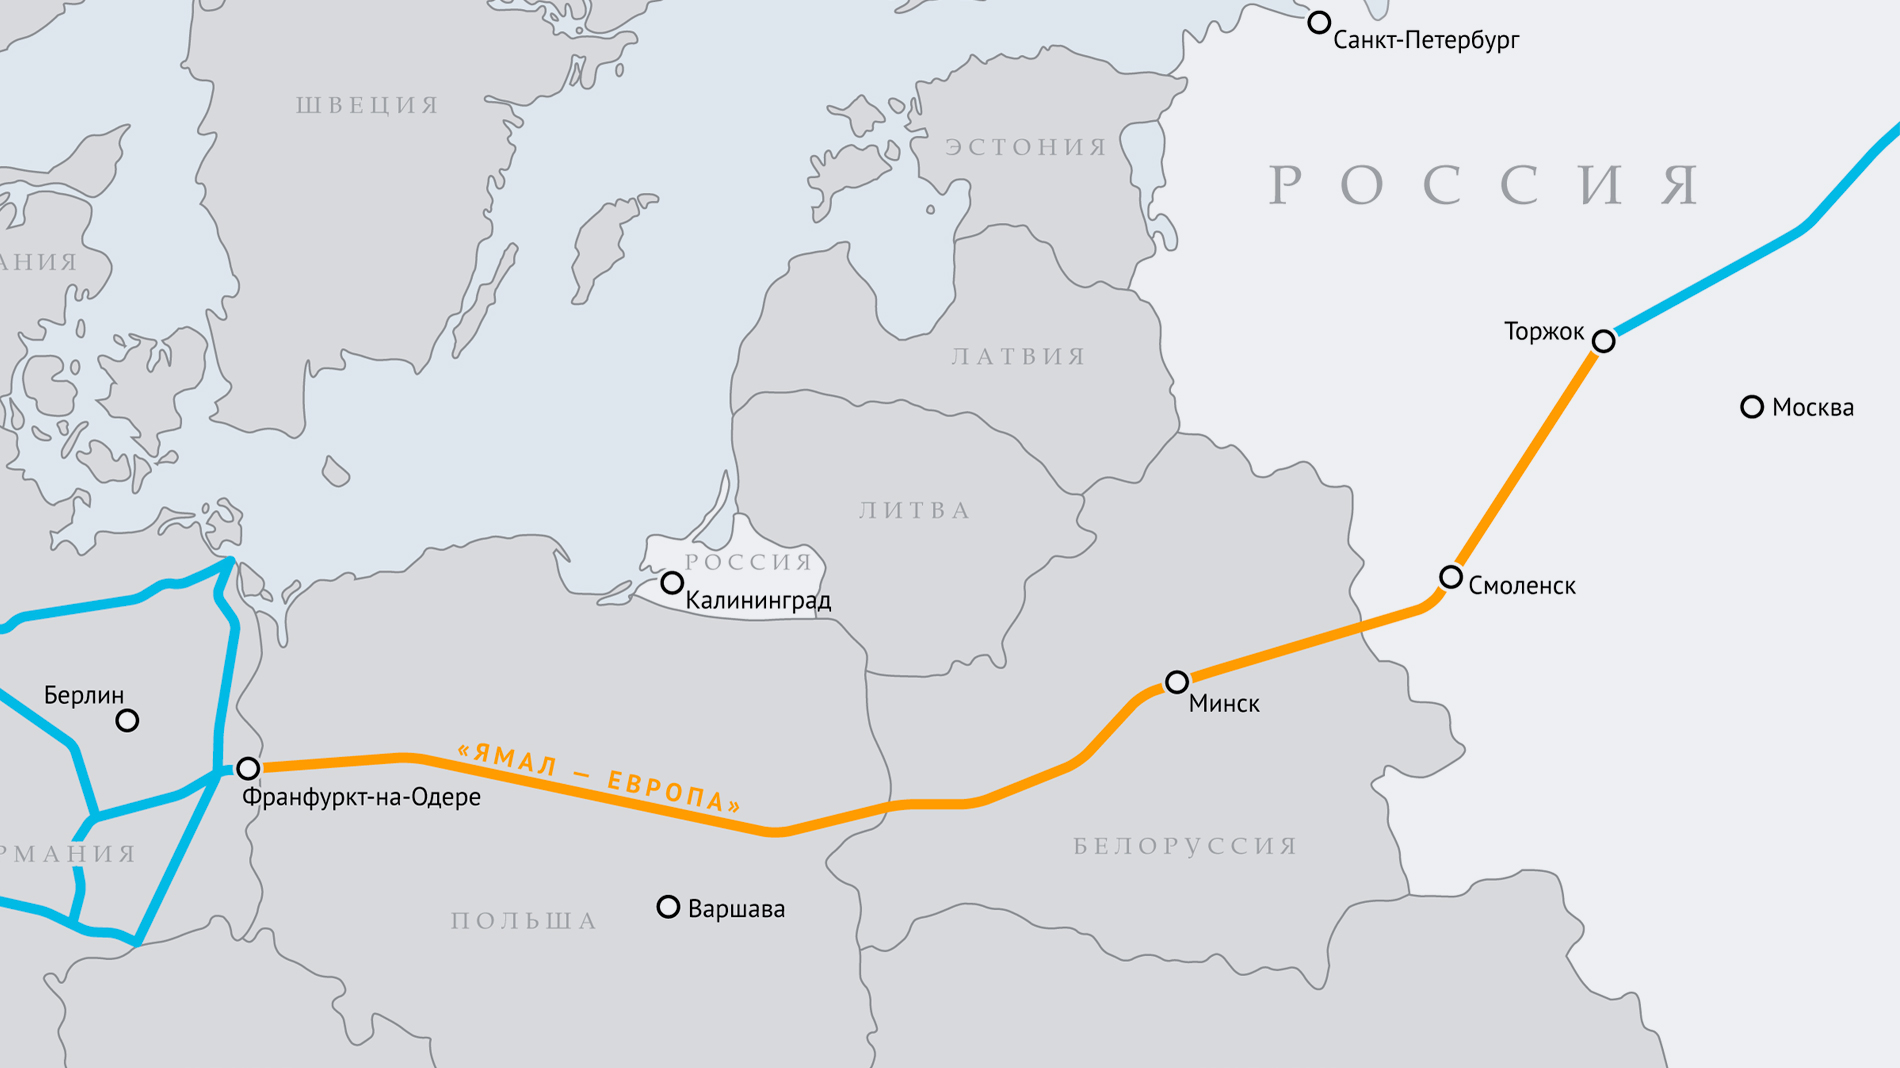 Транснациональный газопровод Ямал — Европа проходит по территории четырёх стран — России, Белоруссии, Польши и Германии. Фото © gazprom.ru